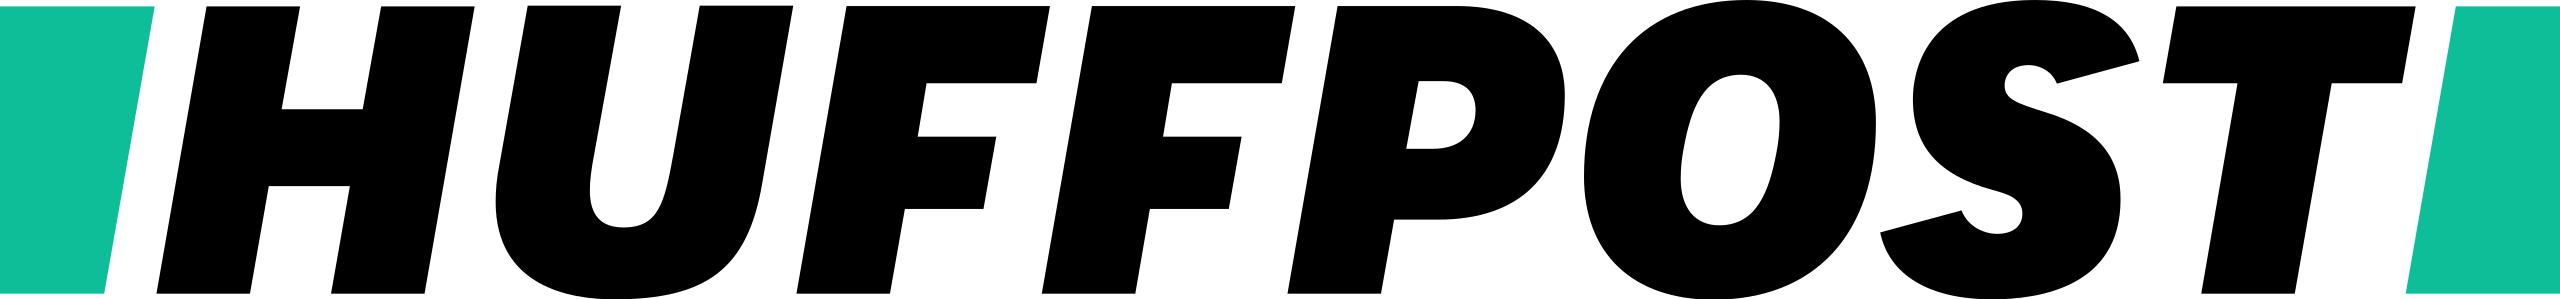 Logo Huffpost